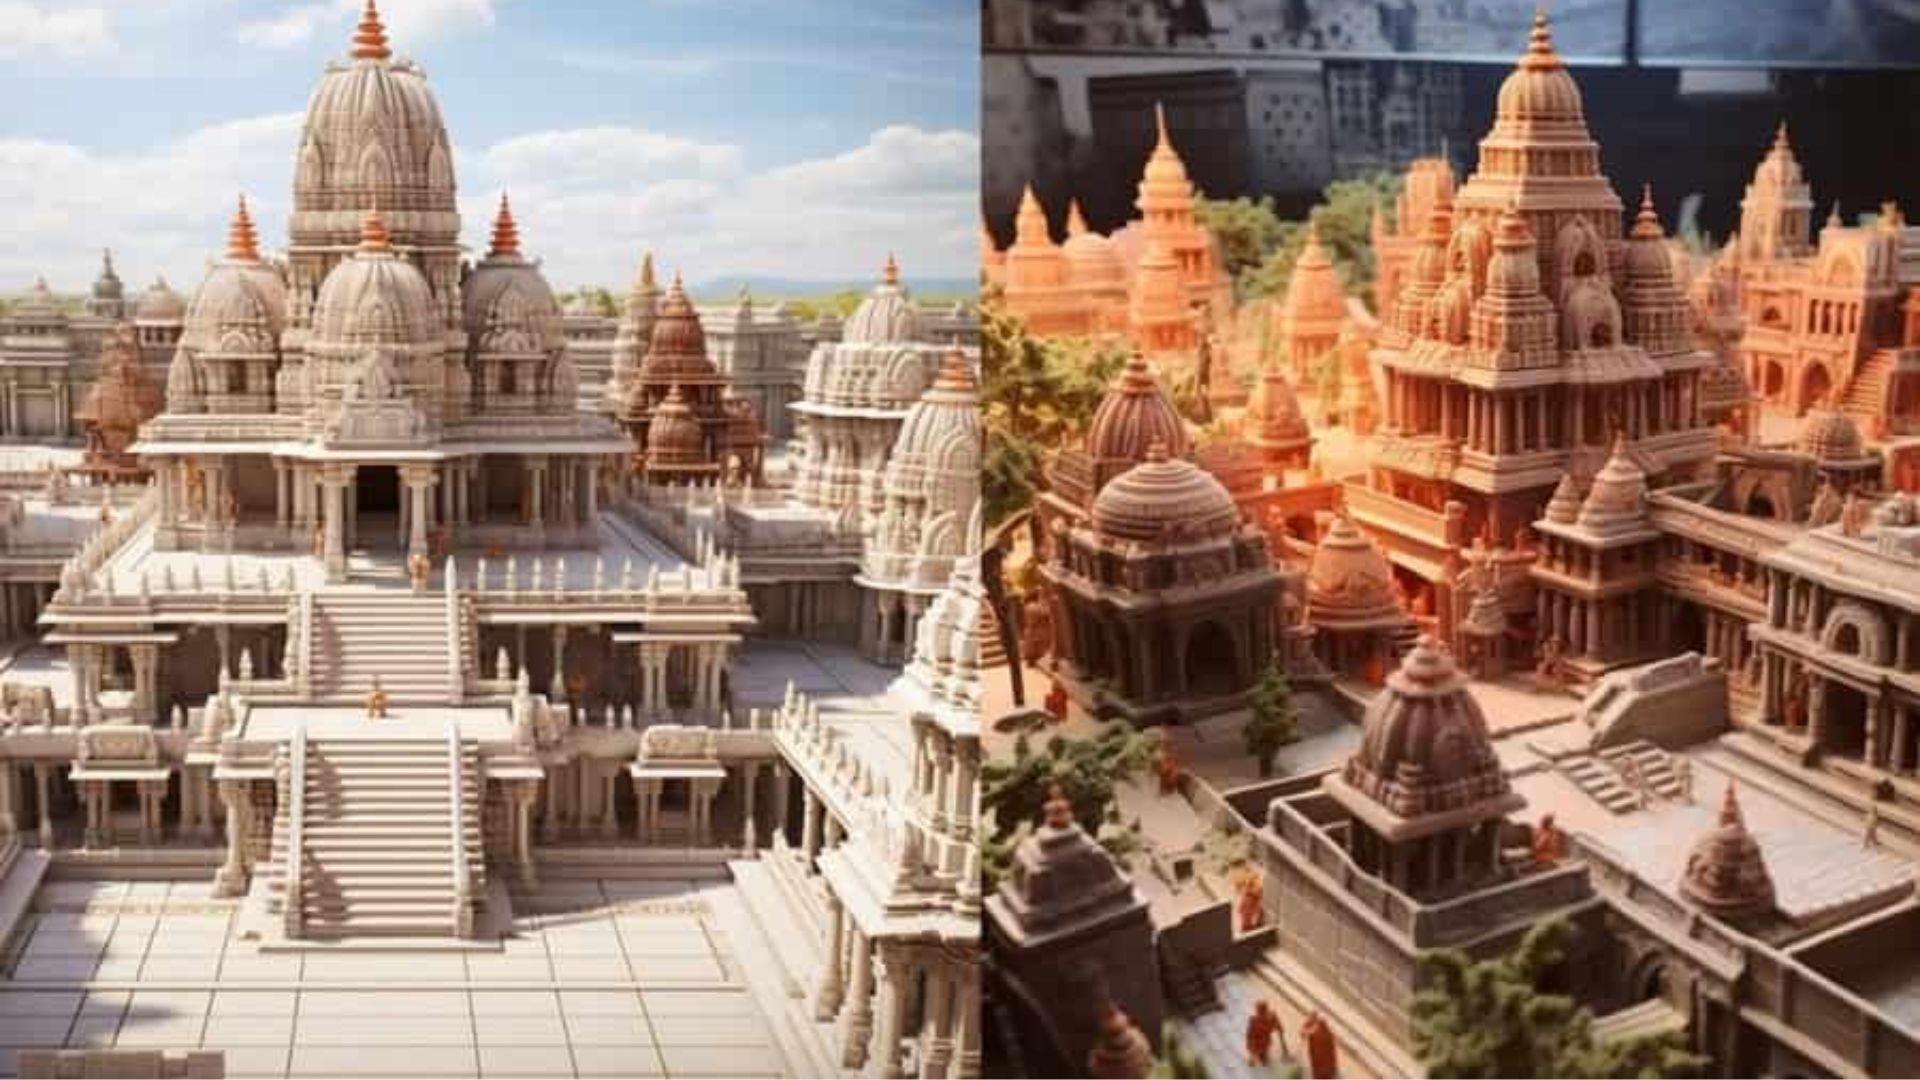 Karsewakpuram Deked -Up For the Grand ‘Pran Pratishtha’